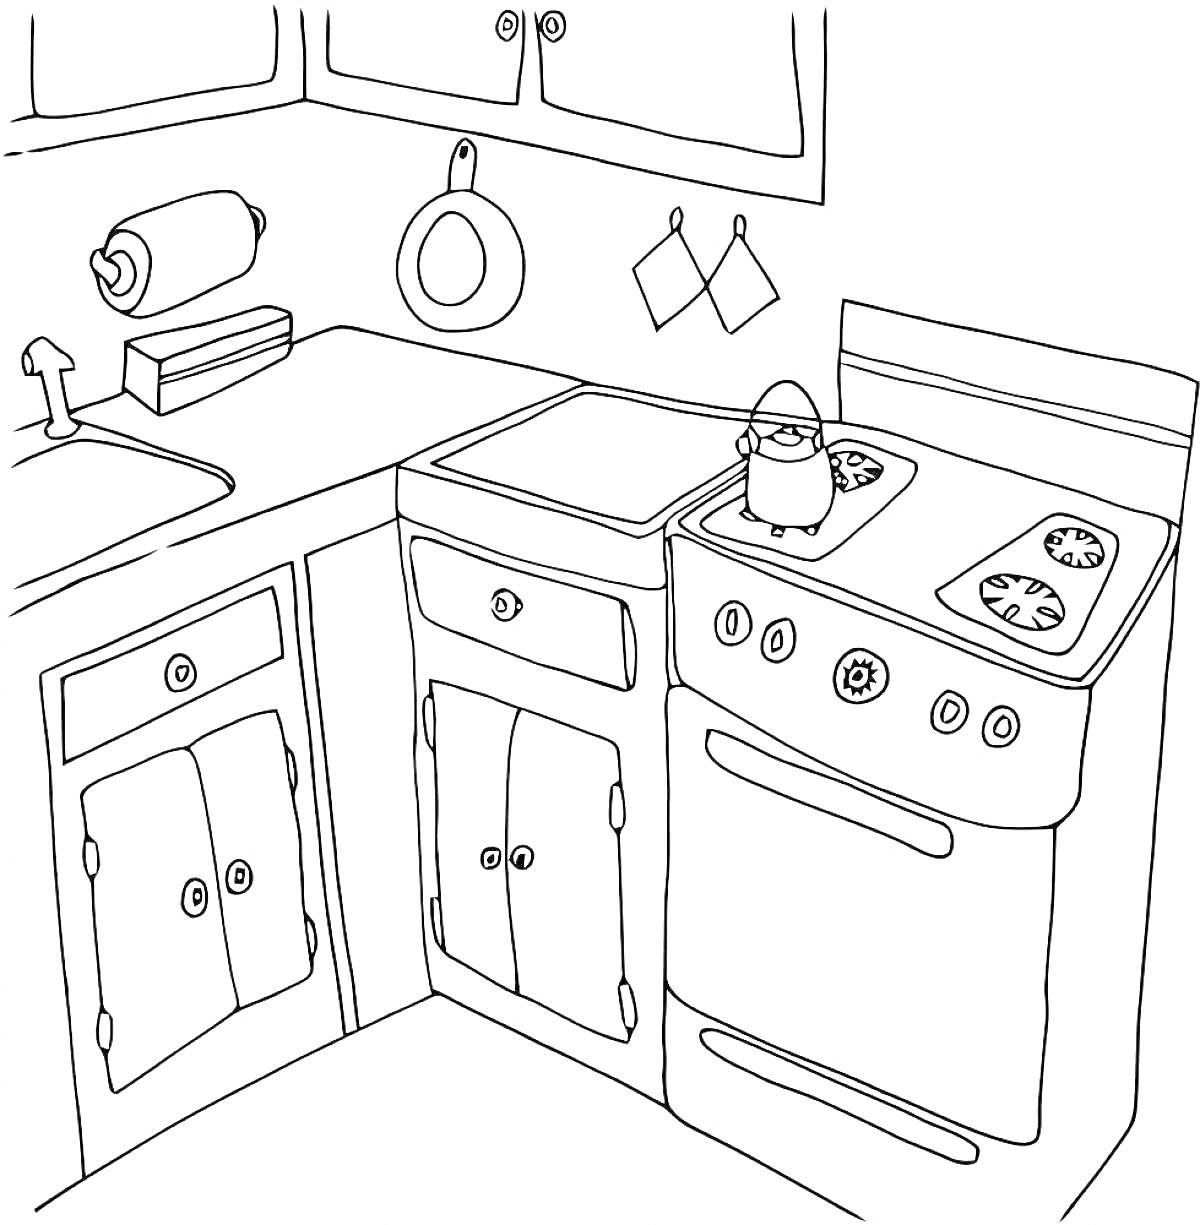 Раскраска Кухня с раковиной, полками, бумажным полотенцем, кастрюлей, плитой, крючками и шкафчиками.